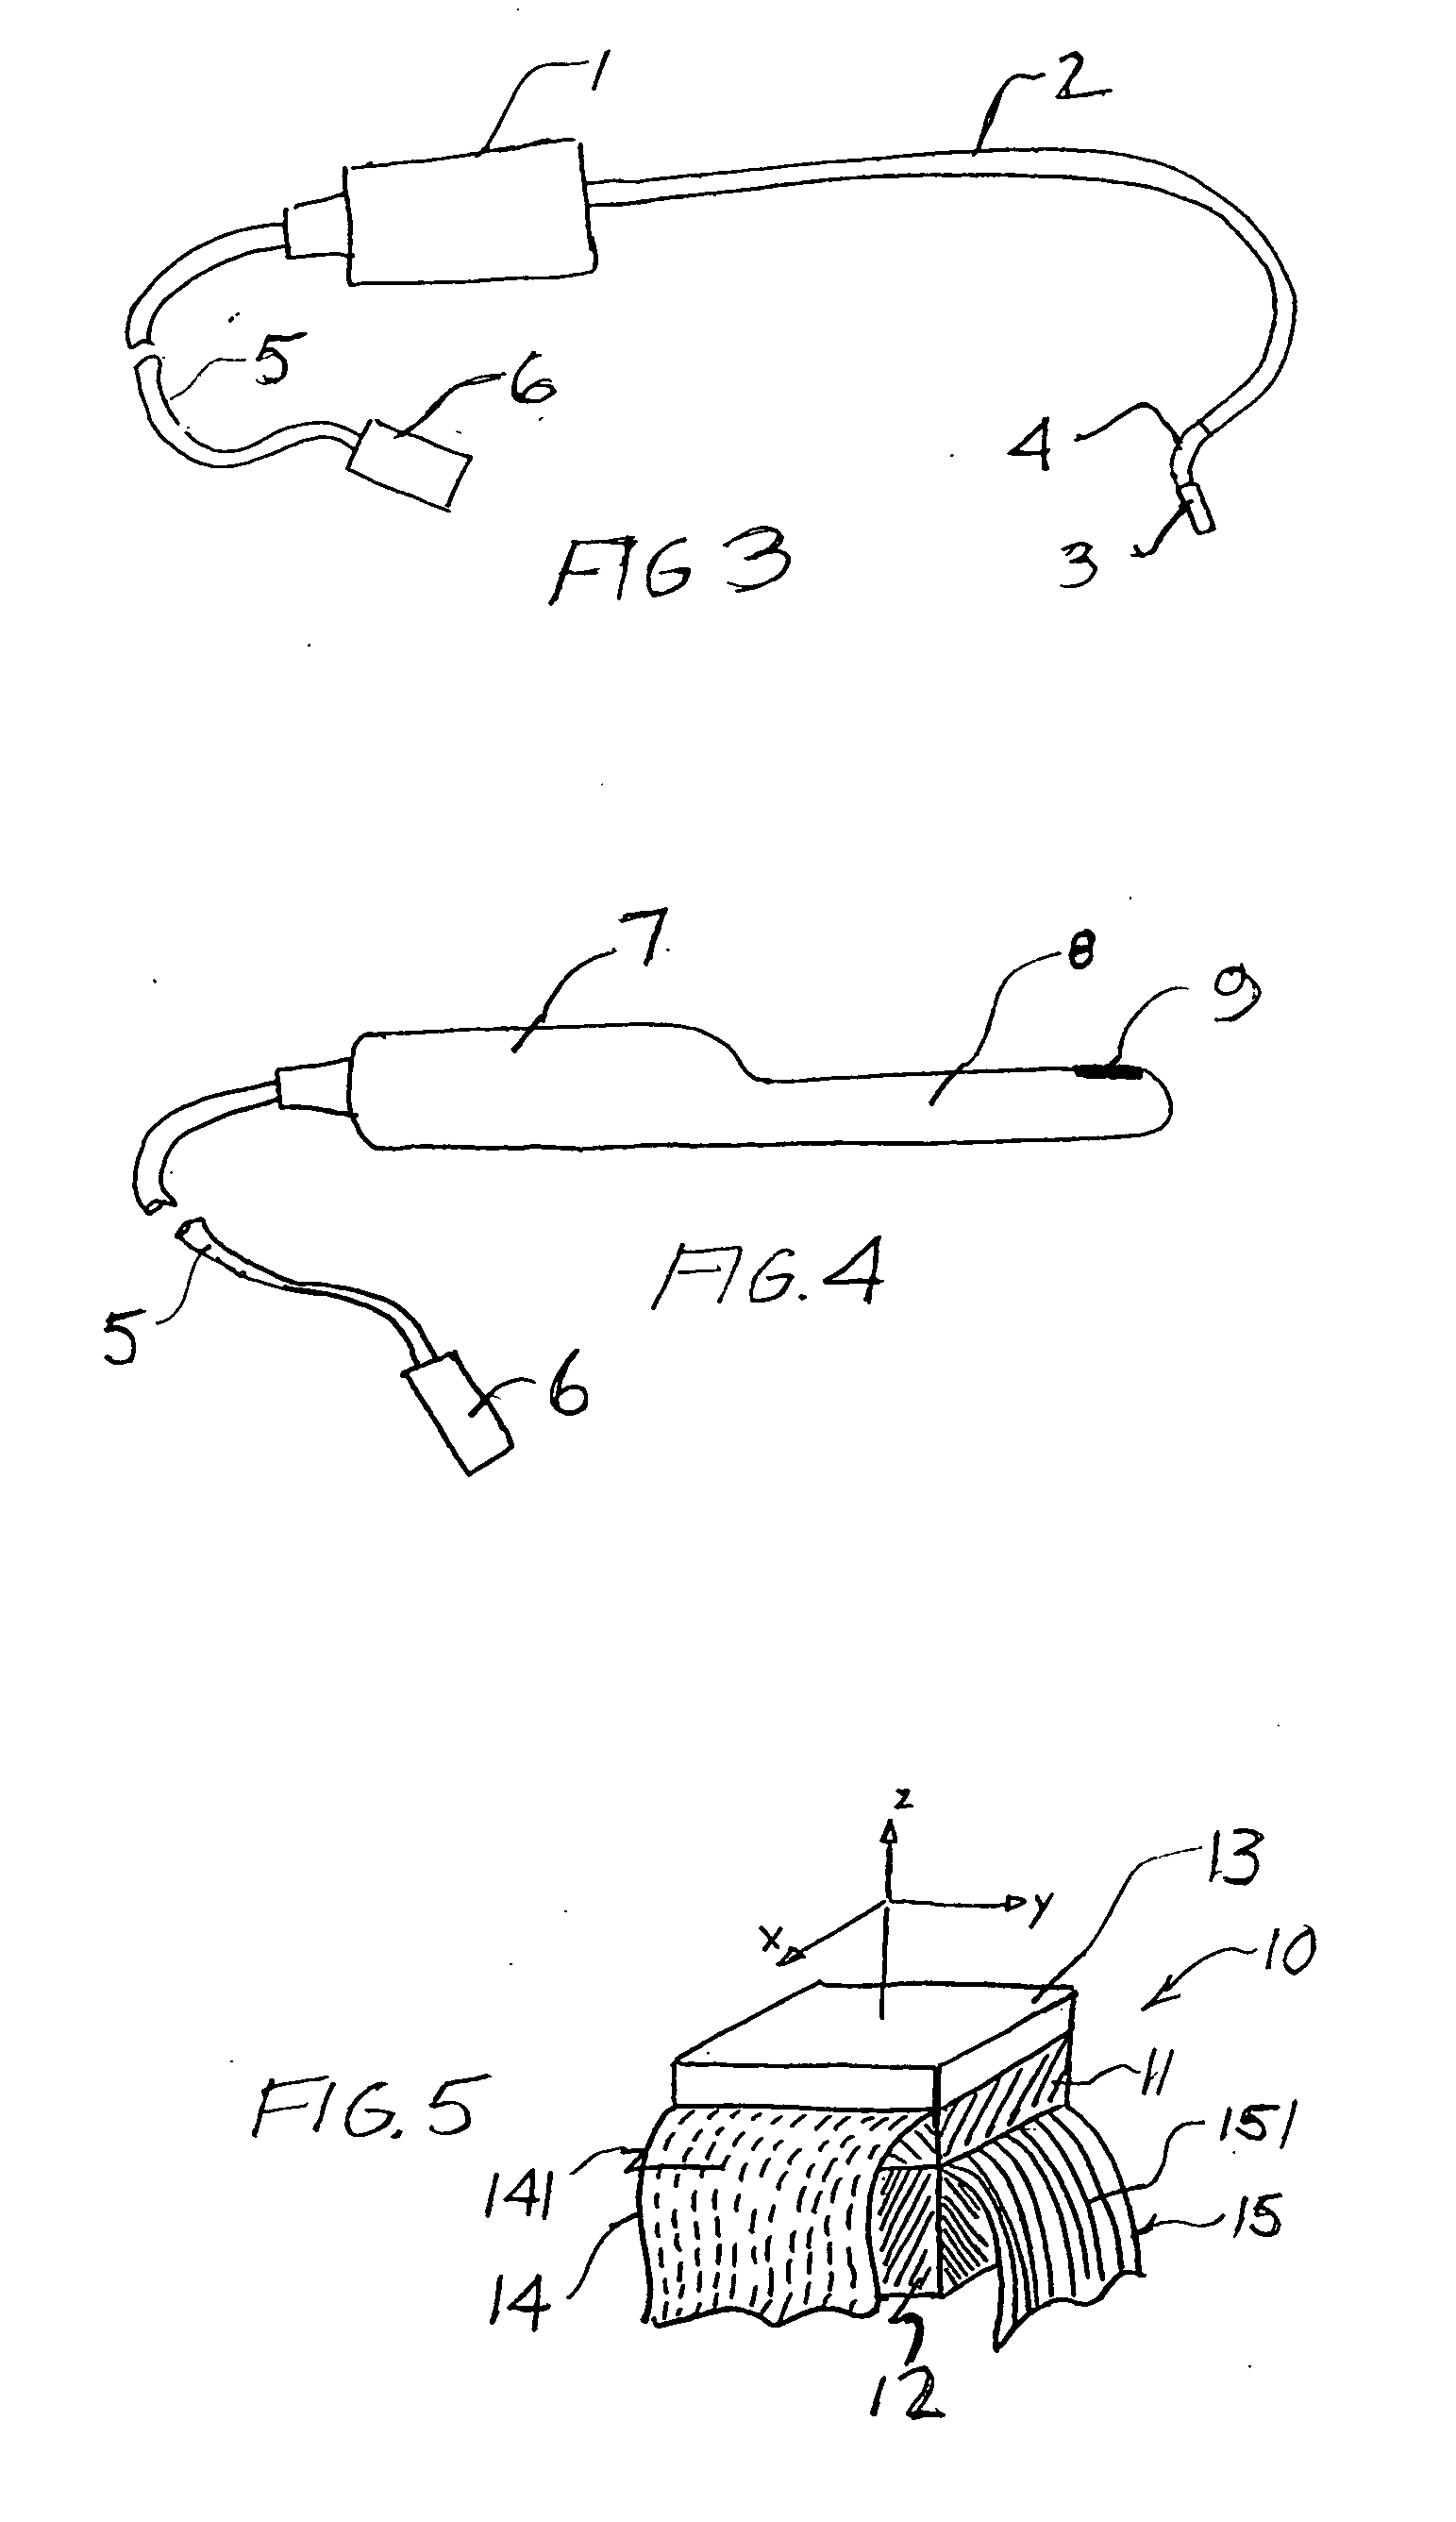 Bi-plane ultrasonic probe